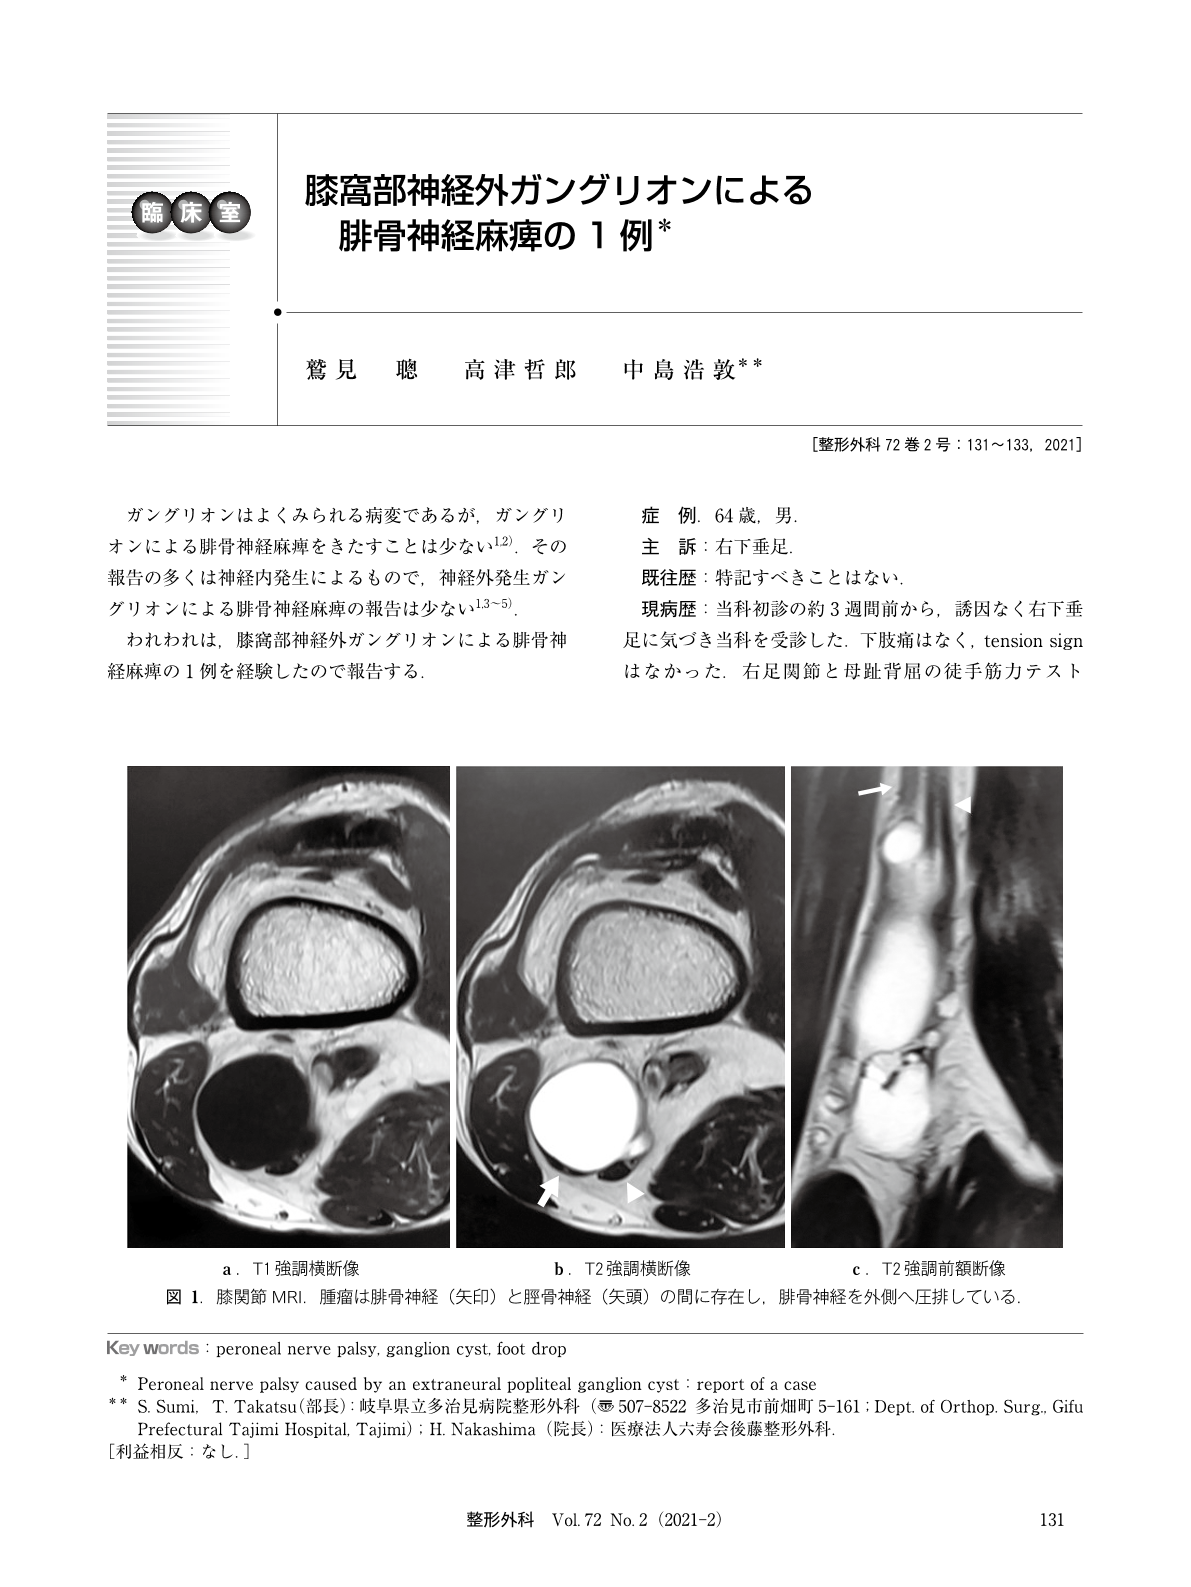 膝窩部神経外ガングリオンによる腓骨神経麻痺の1例 臨床雑誌整形外科 72巻2号 医書 Jp